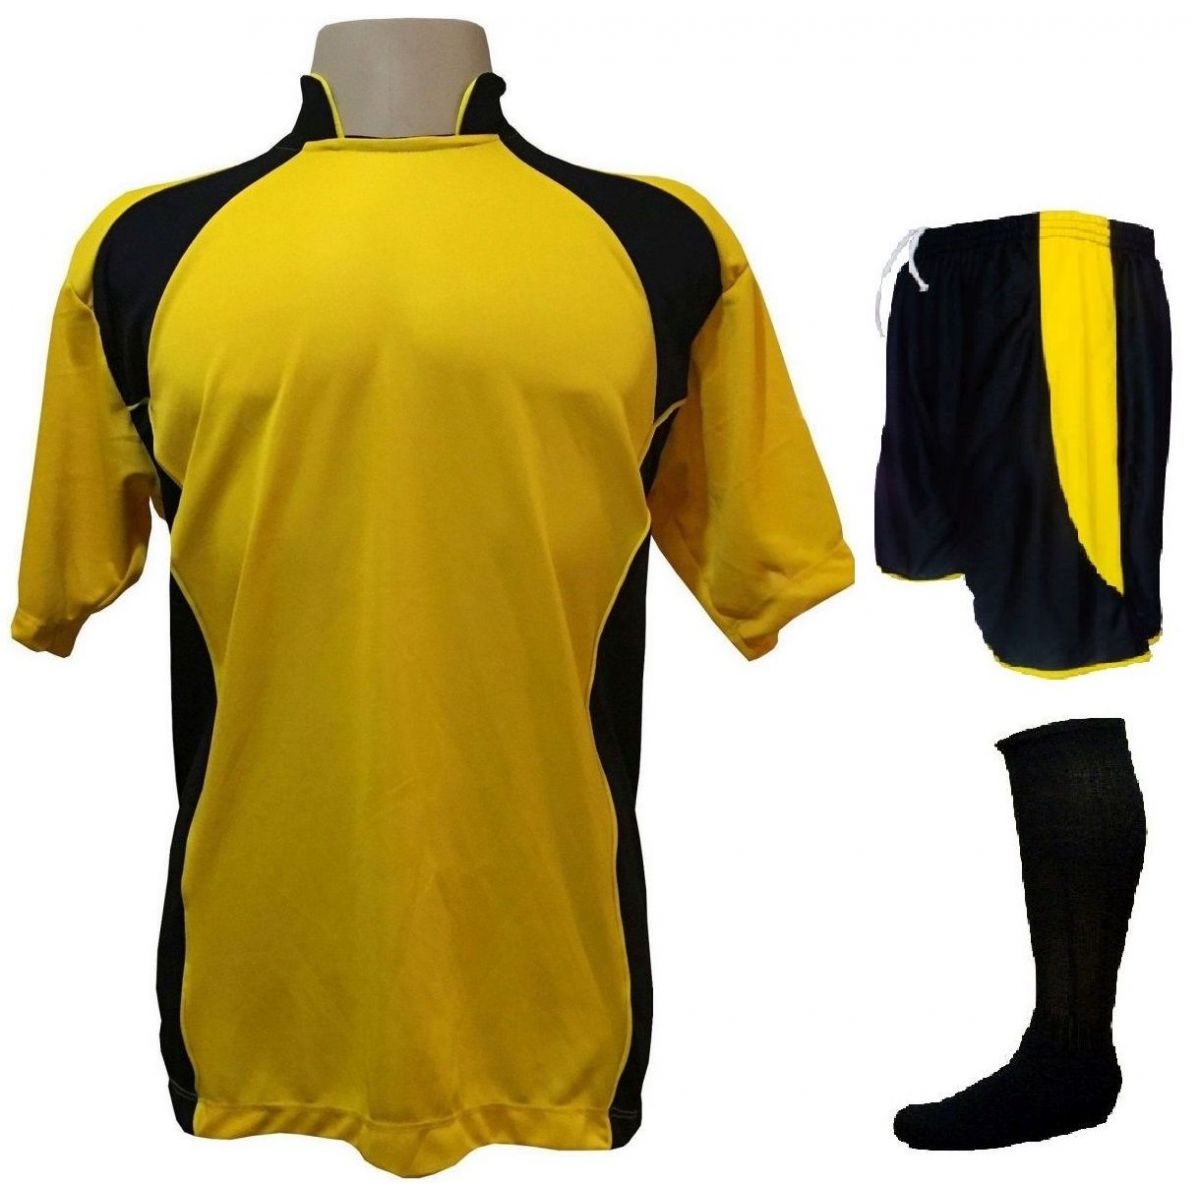 Uniforme Esportivo Completo Modelo Suécia 14+1 (14 Camisas Amarelo/Preto + 14 Calções Modelo Copa Preto/Amarelo + 14 Pares de Meiões Pretos + 1 Conjunto de Goleiro) + Brindes